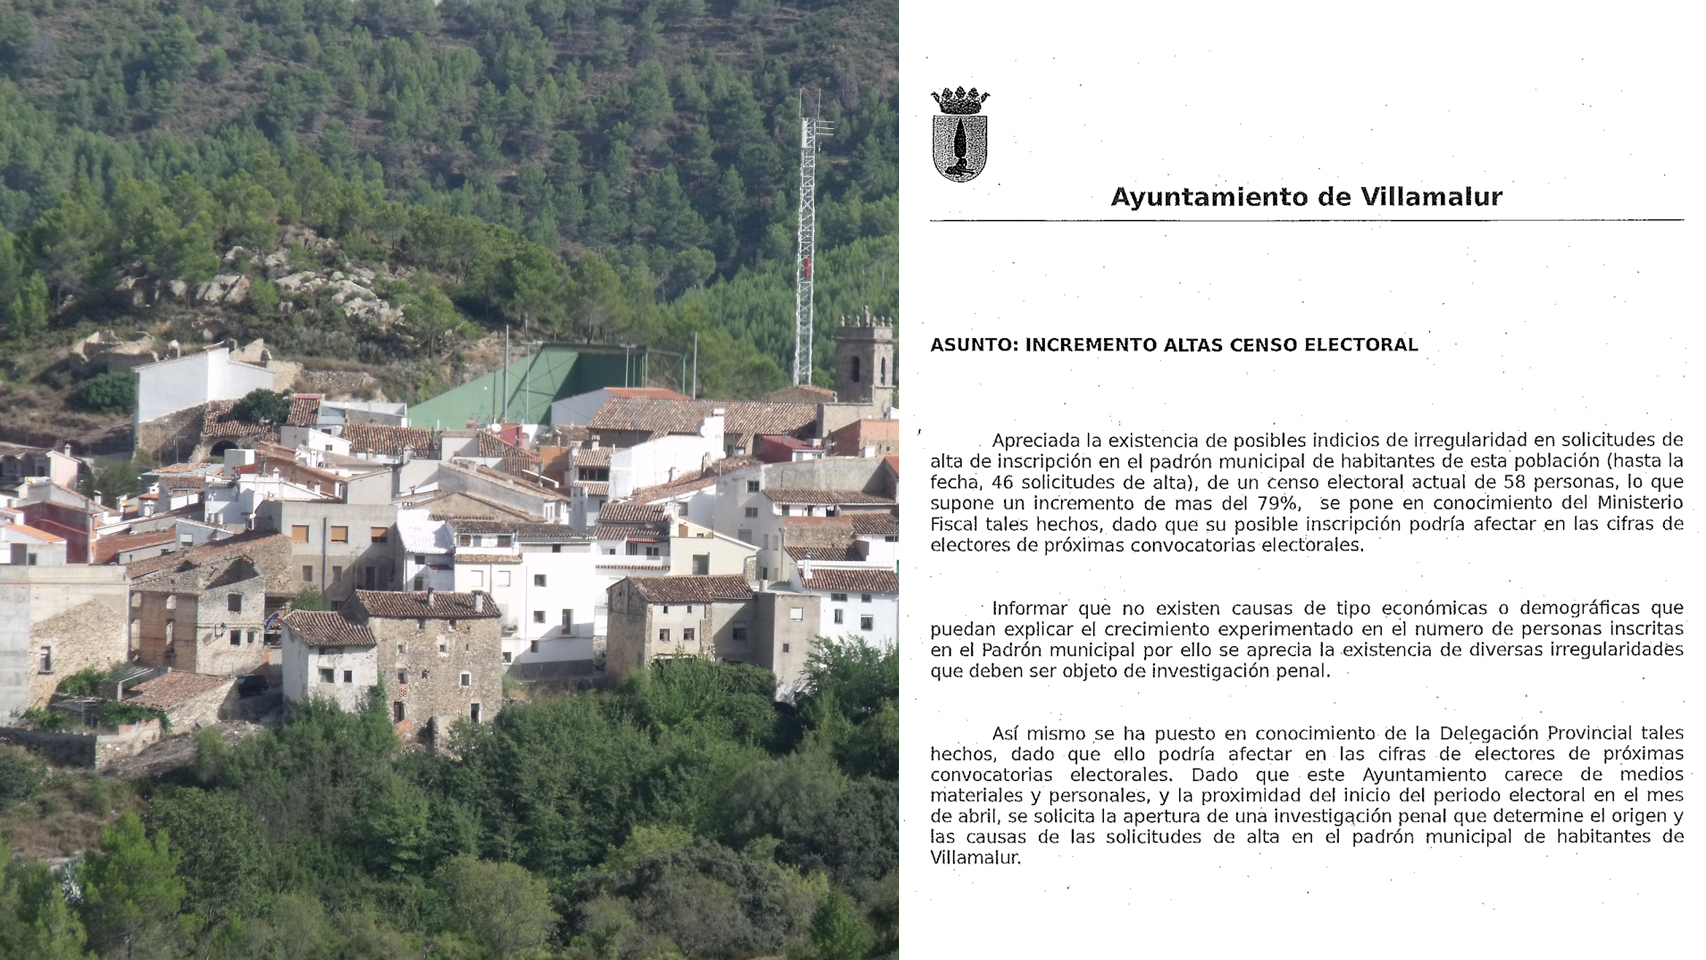 Imagen de Villamalur y la denuncia del Ayuntamiento presentada ante la Fiscalía de Castellón.